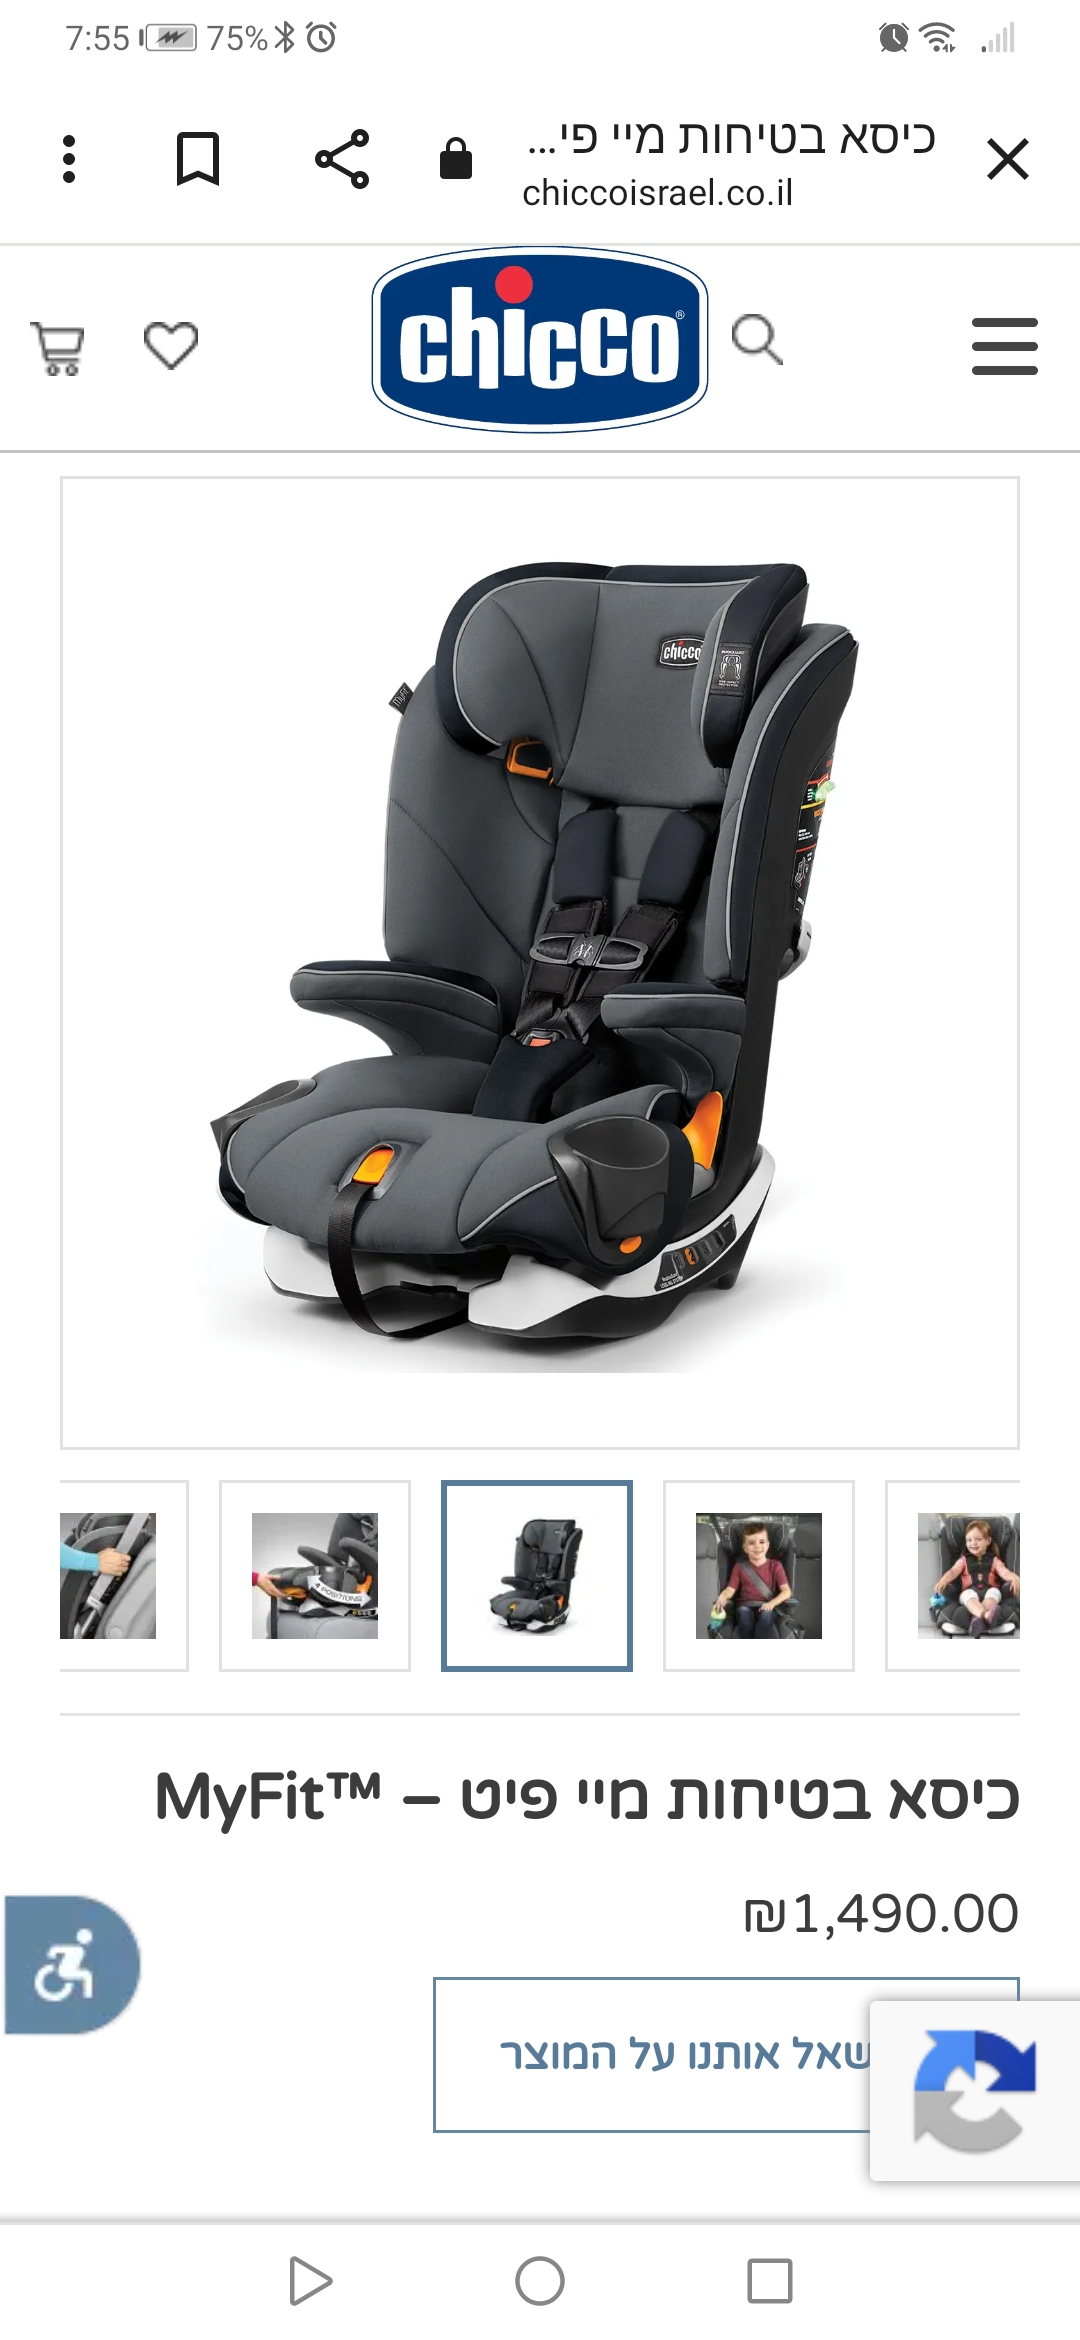 תמונה 1 ,צ'יקו מיי פיט חדש למכירה בהרצליה לתינוק ולילד  כסא לרכב